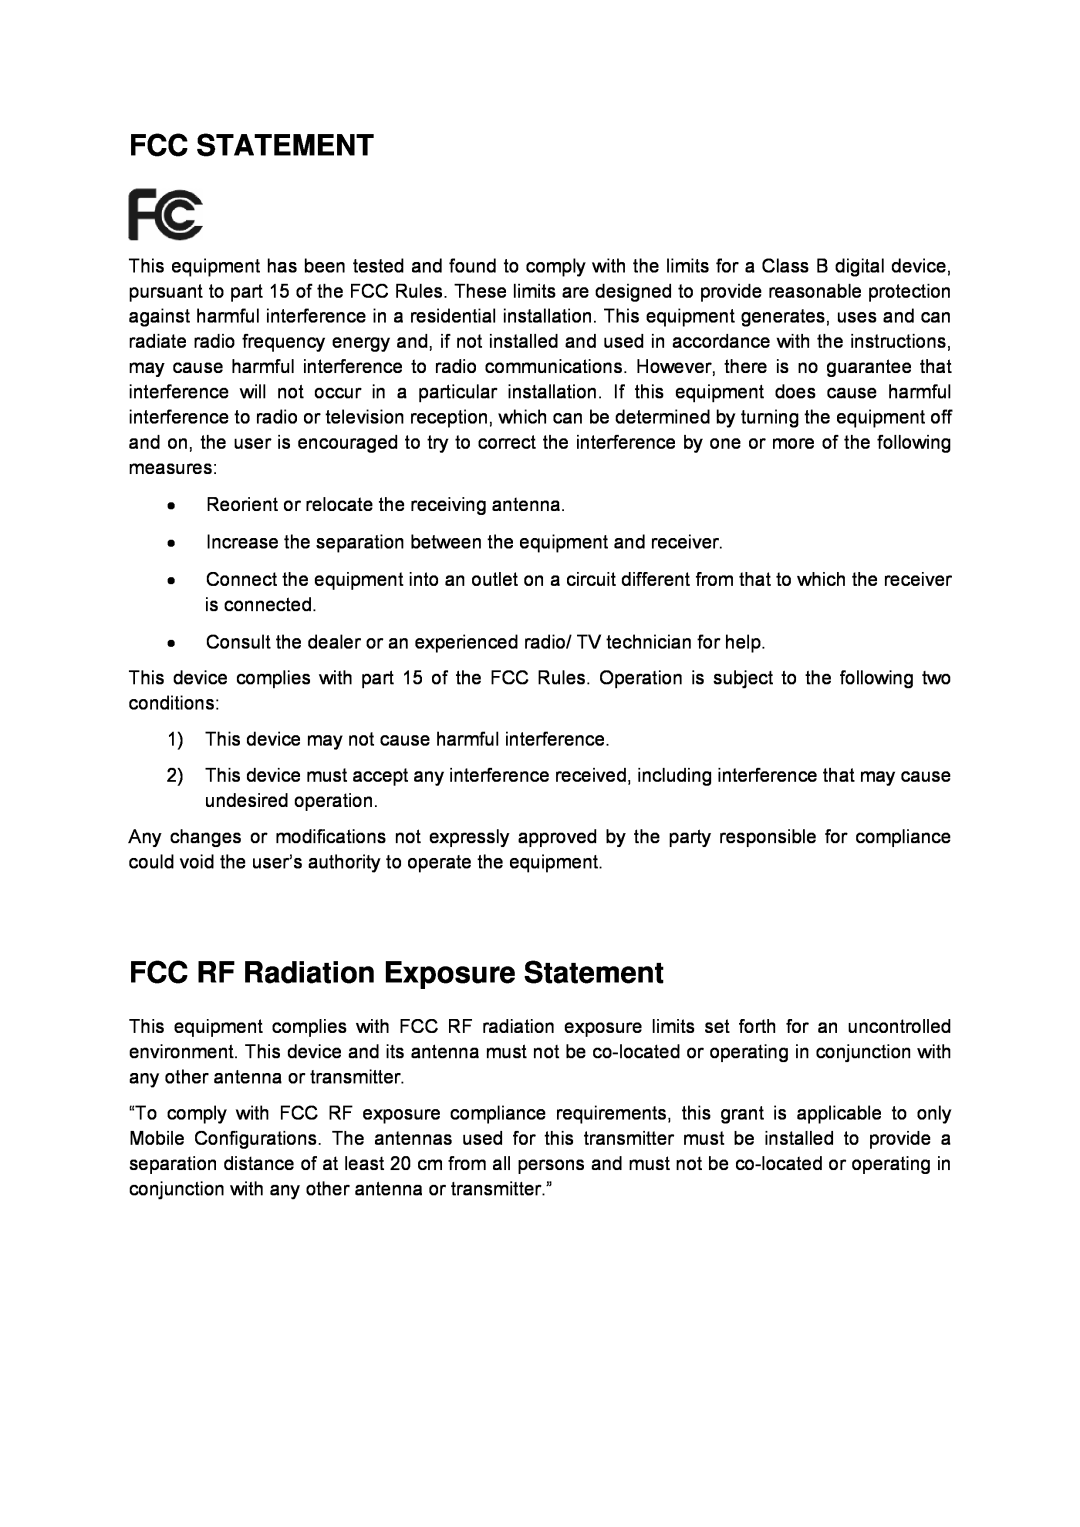 TP-Link TD-W8960N manual Fcc Statement, FCC RF Radiation Exposure Statement 